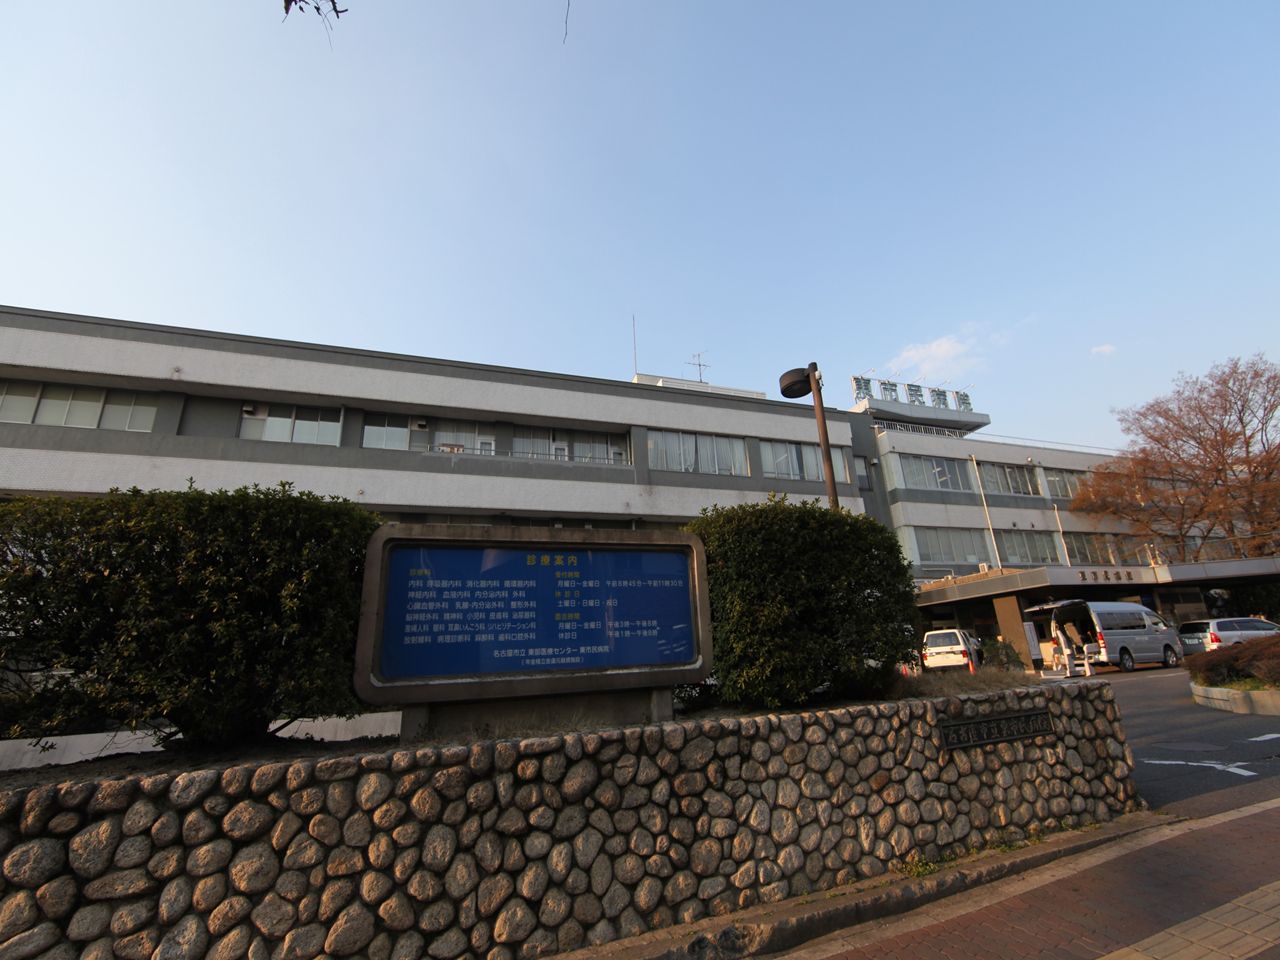 Hospital. 1200m to Nagoya Municipal Eastern Medical Center (General Hospital) (hospital)